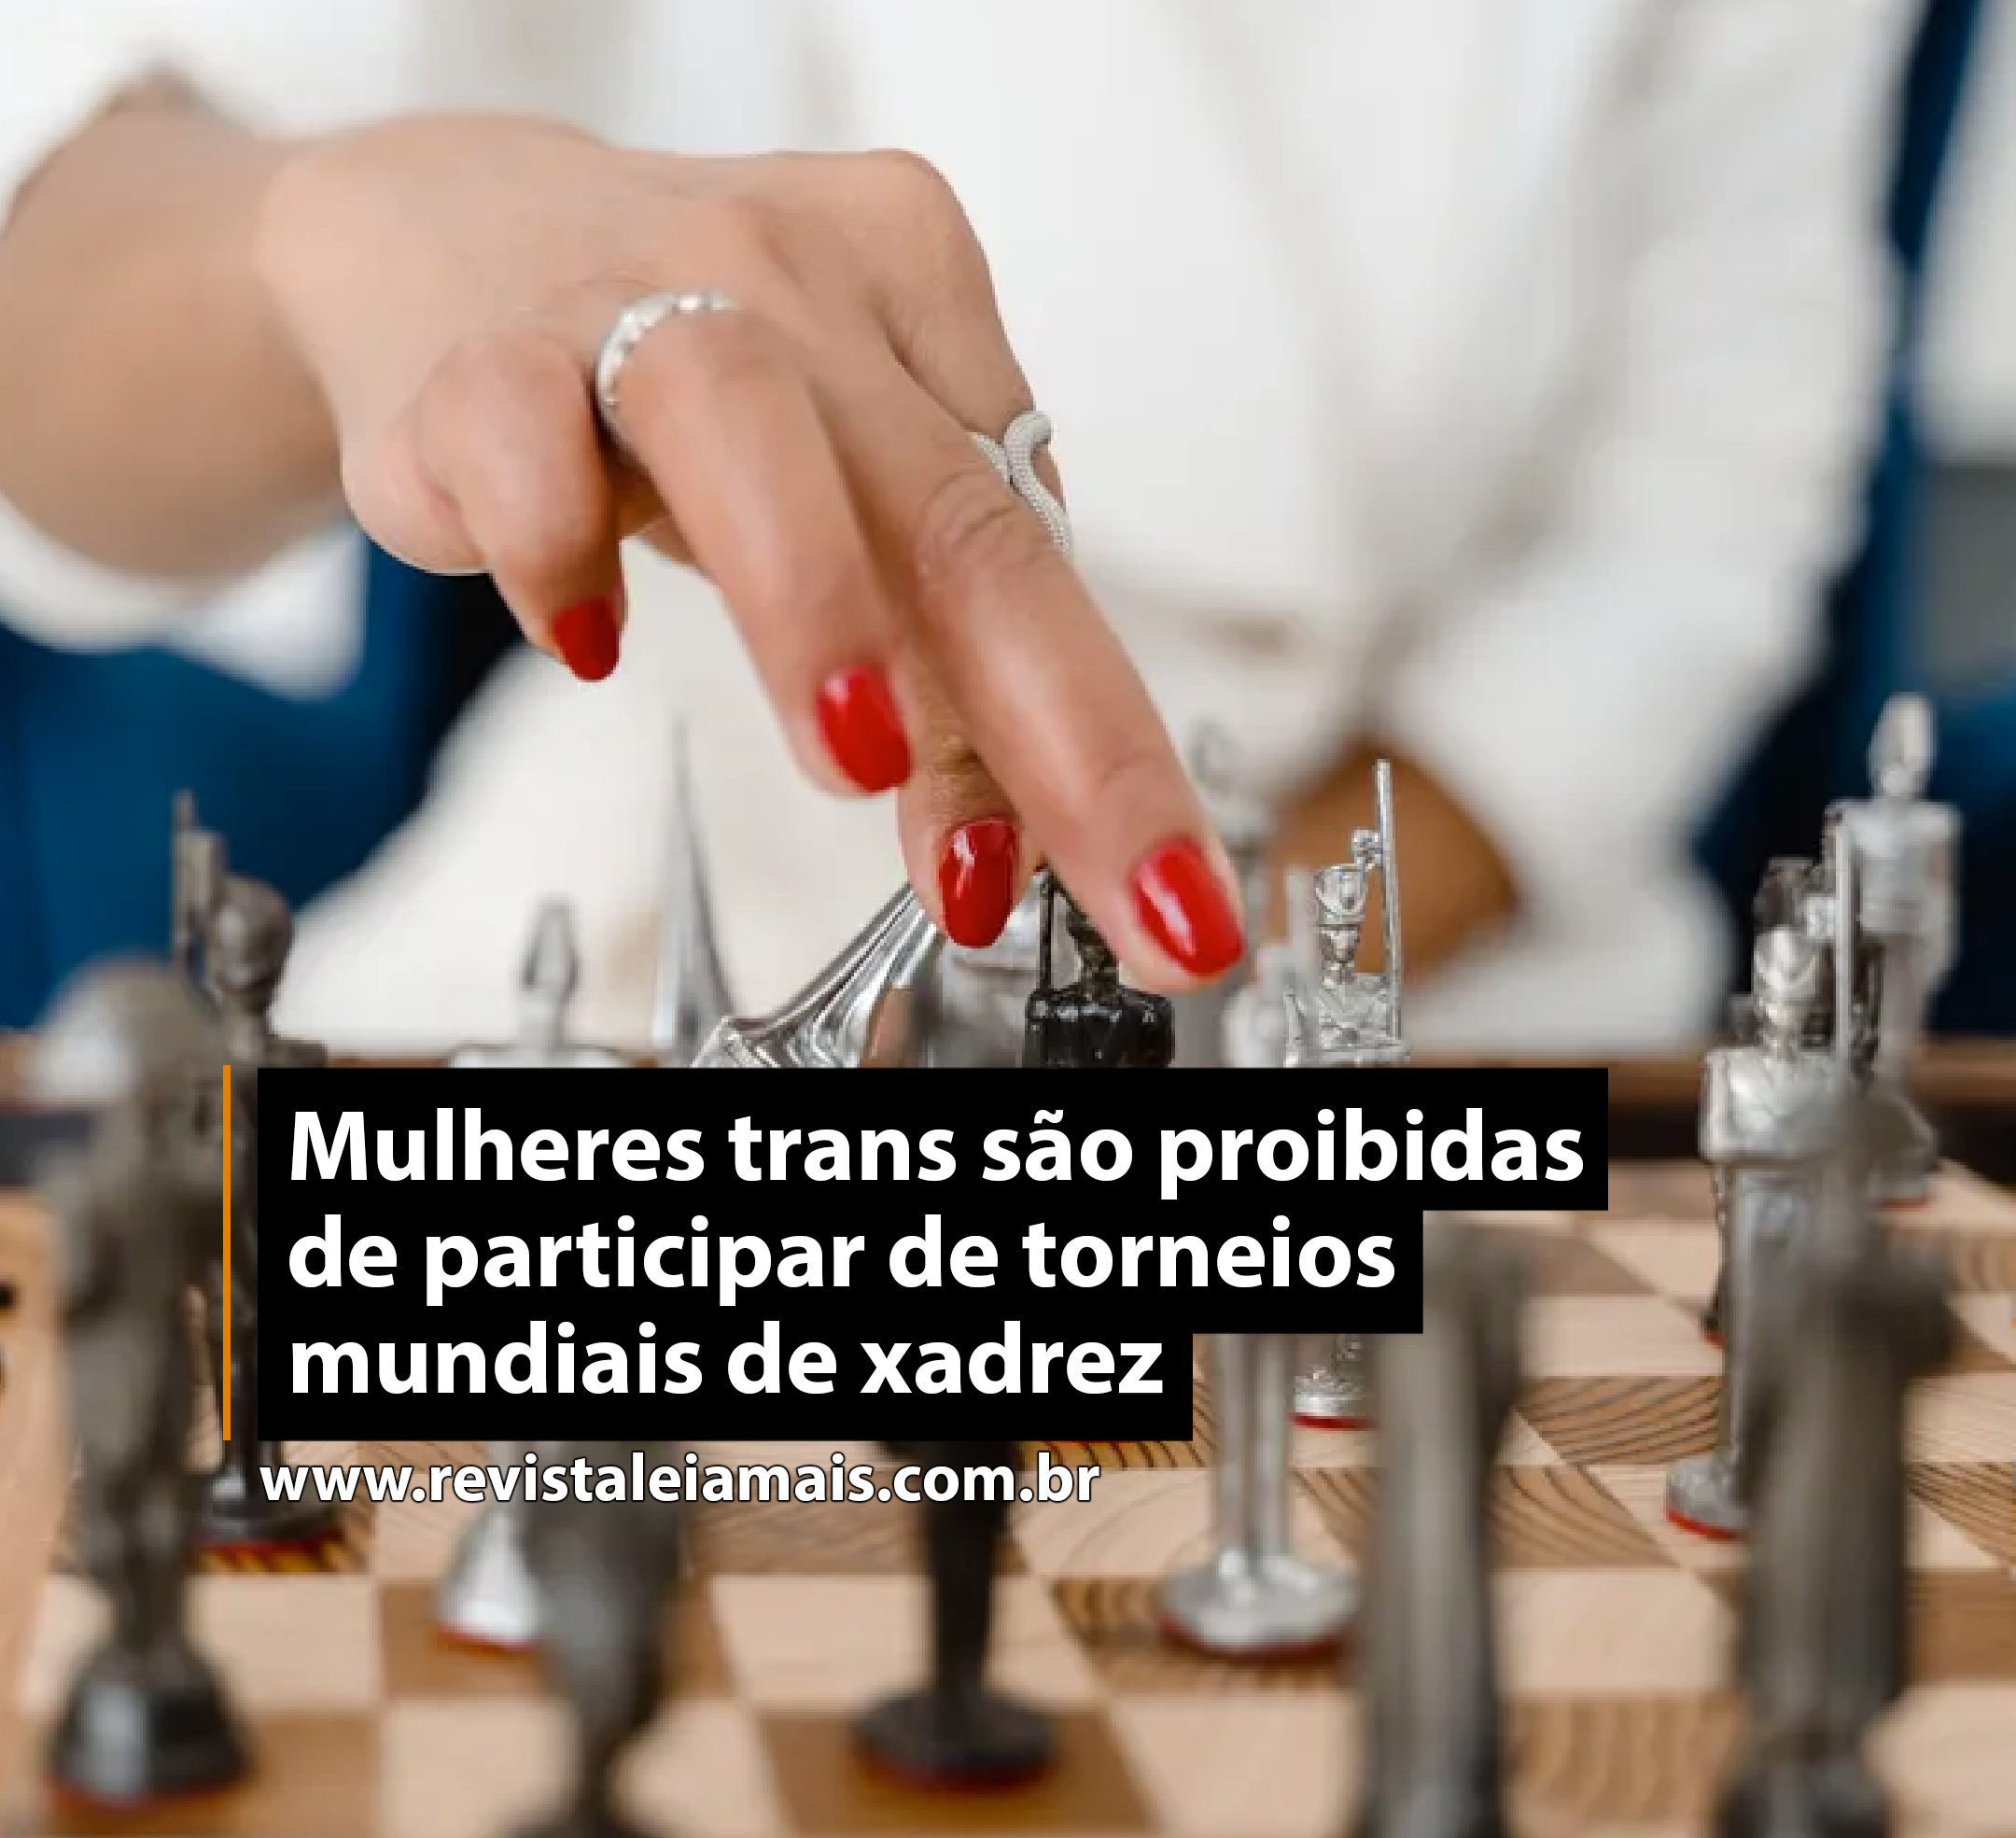 Mulheres trans são proibidas de participar de torneios mundiais de xadrez